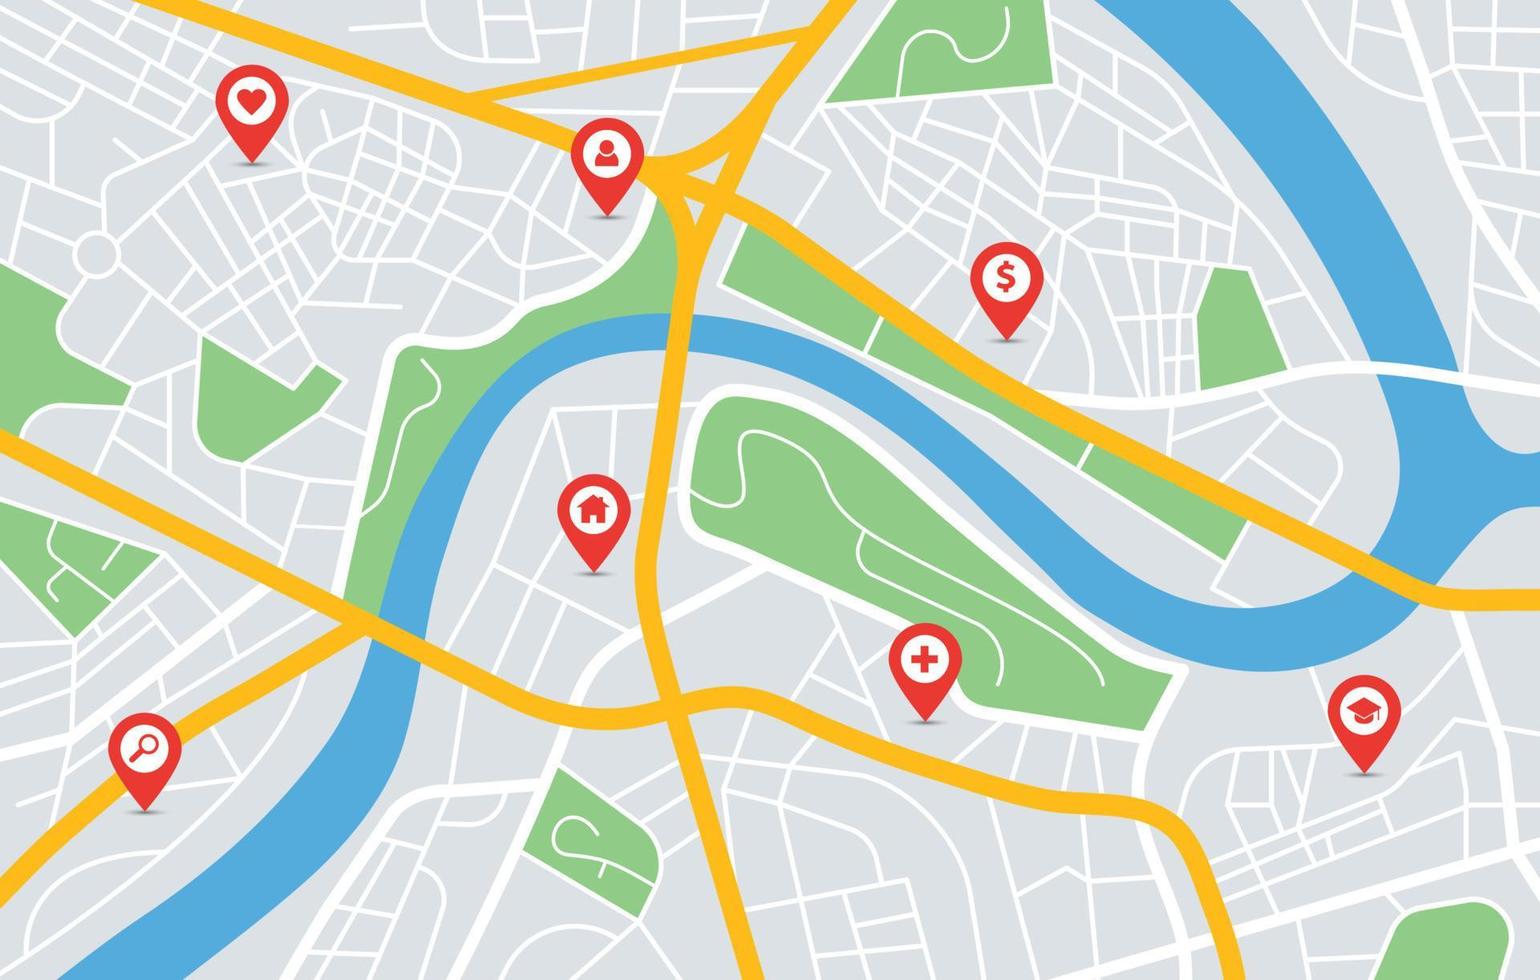 ville carte GPS la navigation avec emplacement épingle Marqueurs. Urbain centre ville routes, parcs, rivière. rouge pointeurs sur feuille de route navigateur vecteur illustration